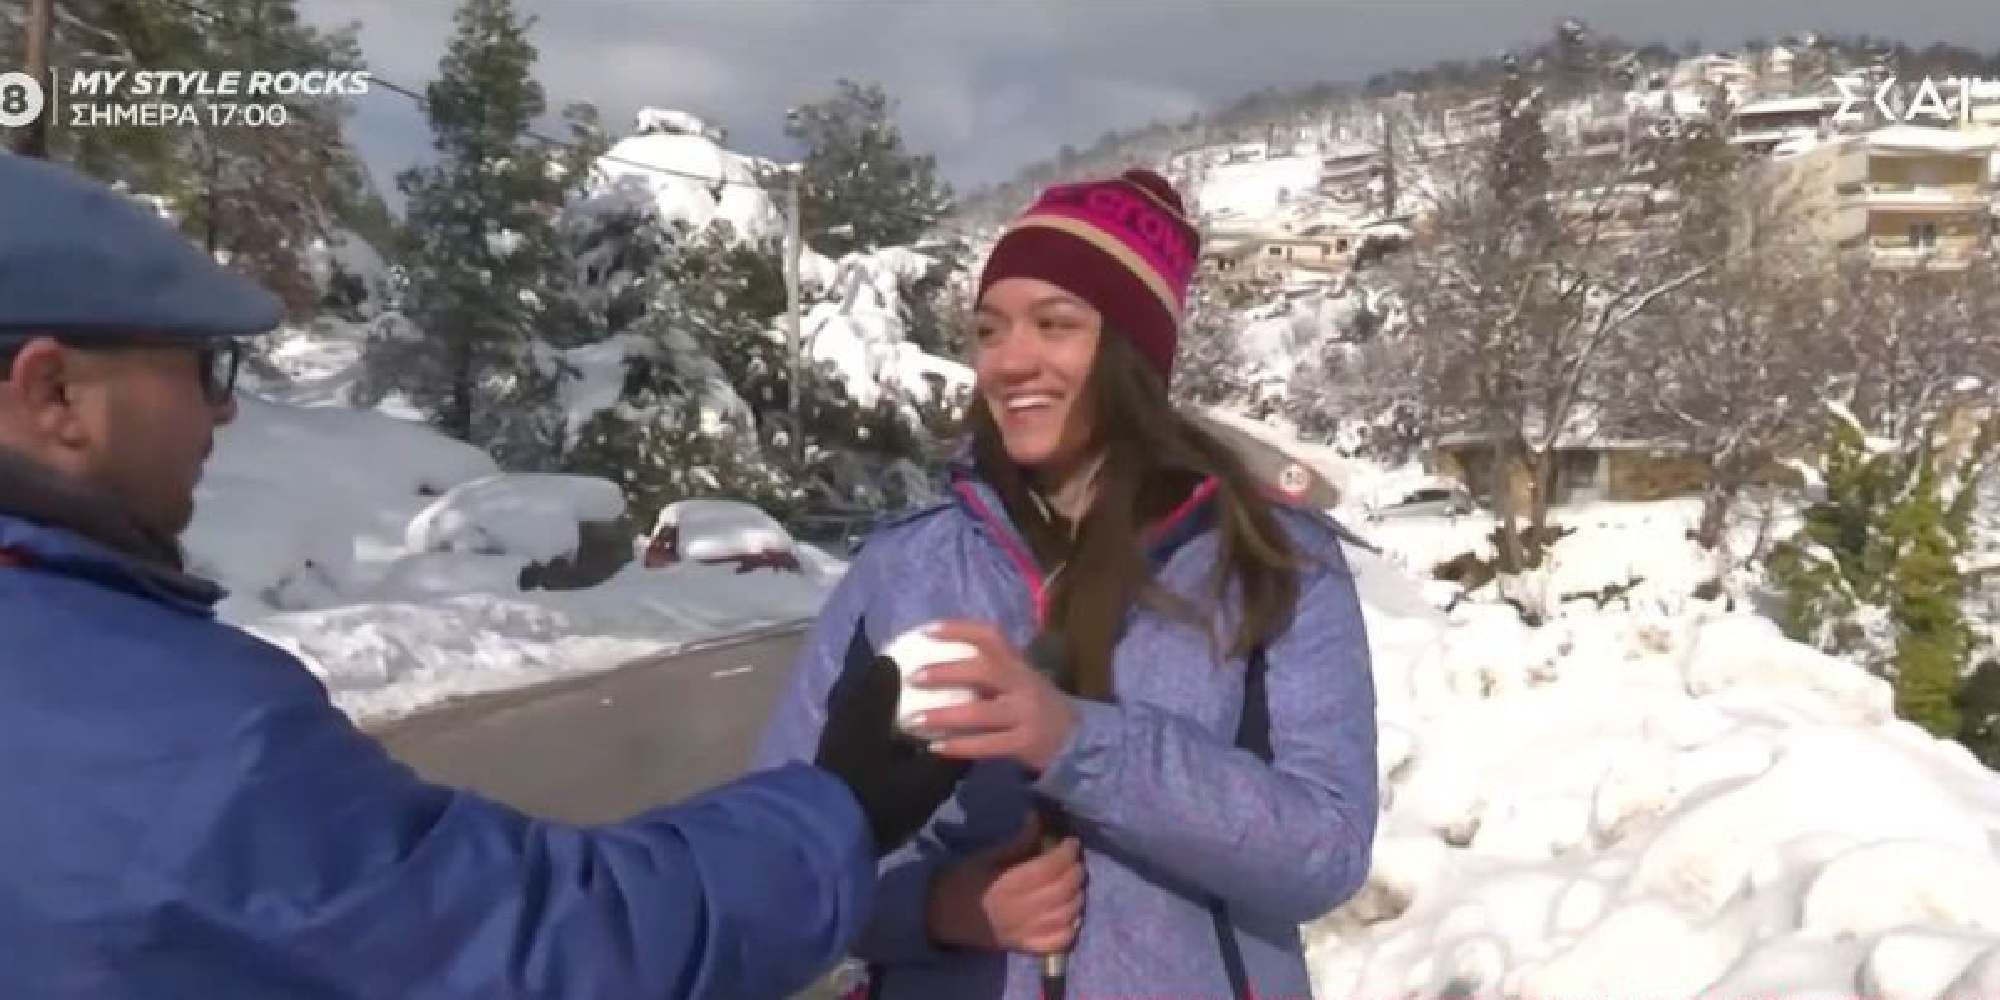 Η ρεπόρτερ του ΣΚΑΪ δέχεται χιονόμπαλα στο πρόσωπο